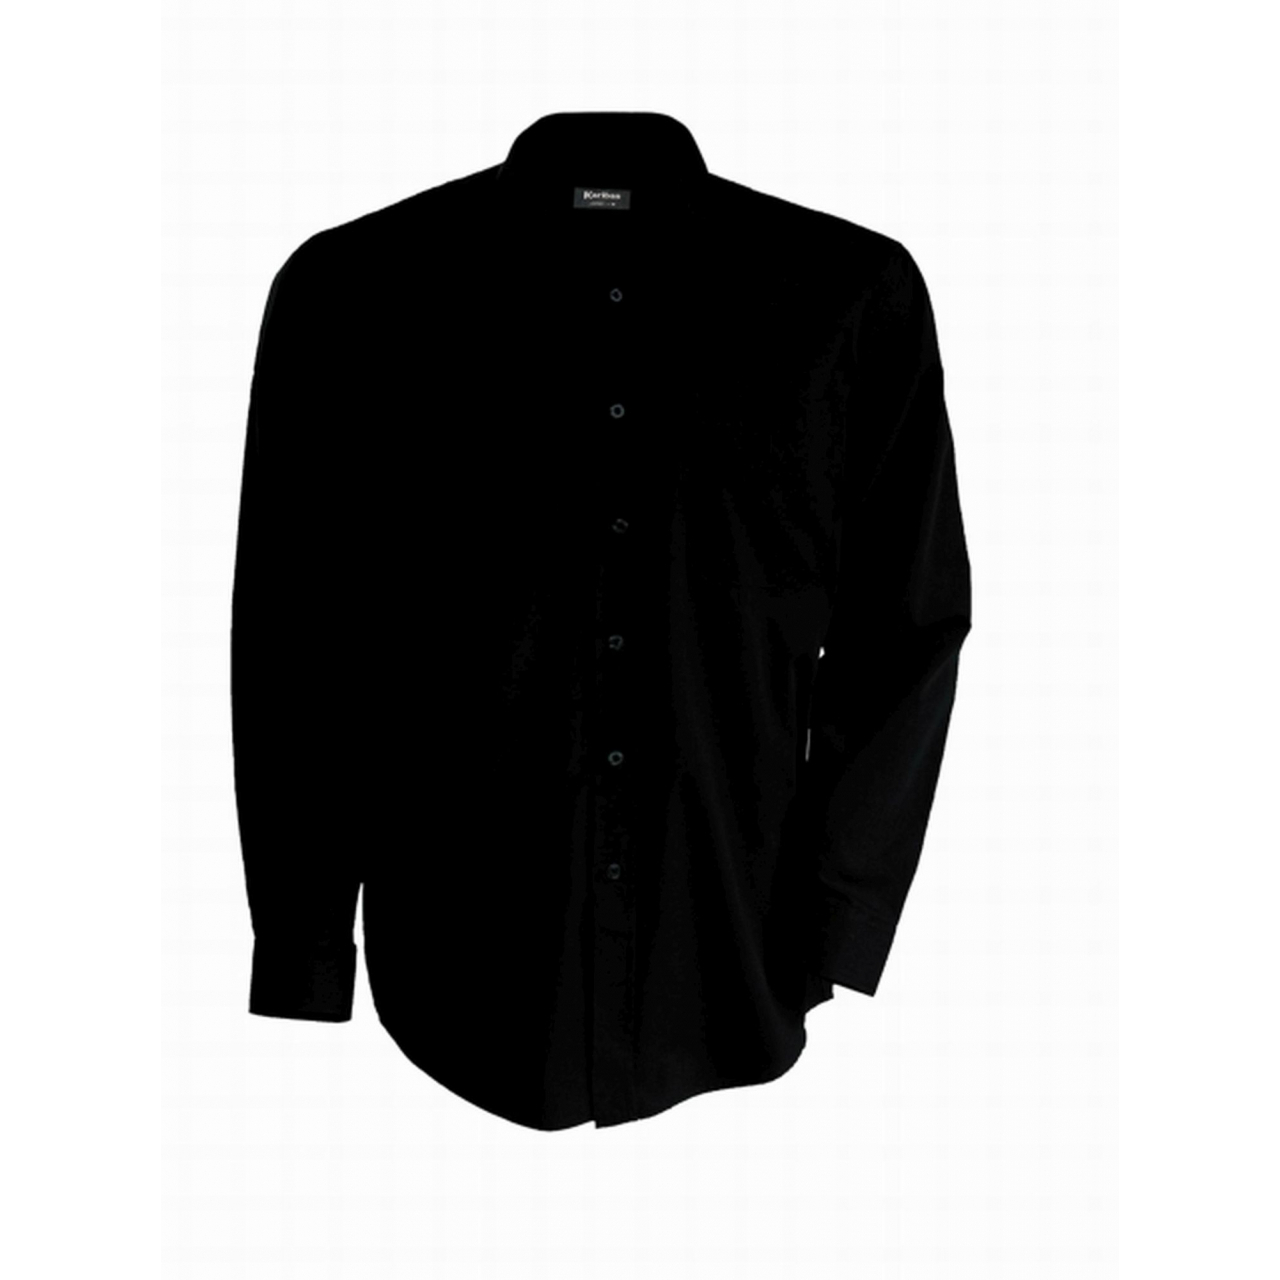 Pánská košile Kariban dlouhý rukáv v nežehlivé úpravě - černá, 4XL